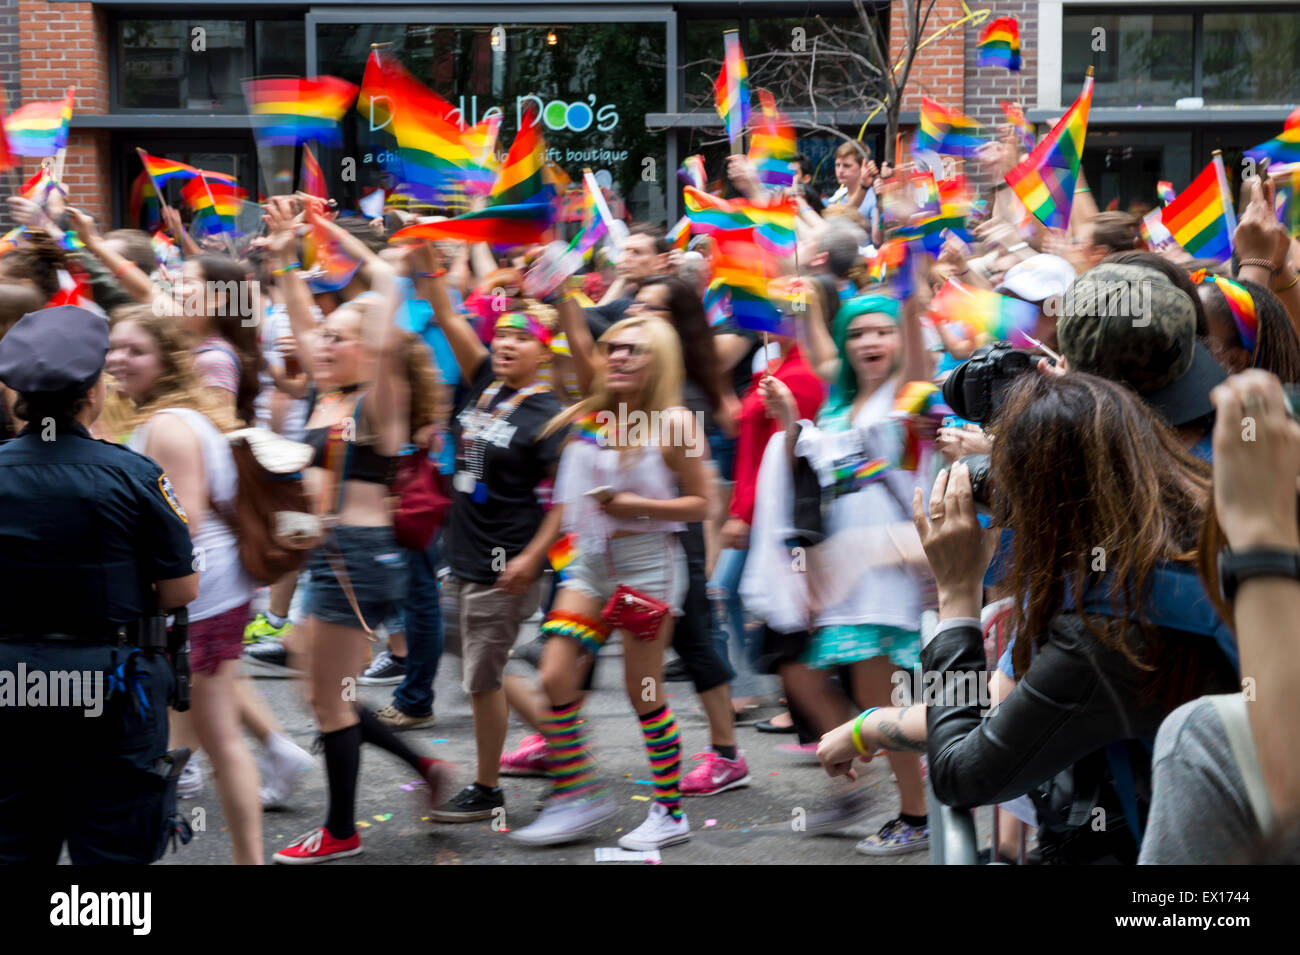 La VILLE DE NEW YORK, USA - 28 juin 2015 : lors de l'Assemblée célébrants gay pride parade des drapeaux arc-en-ciel de l'onde passant acclamer les spectateurs. Banque D'Images